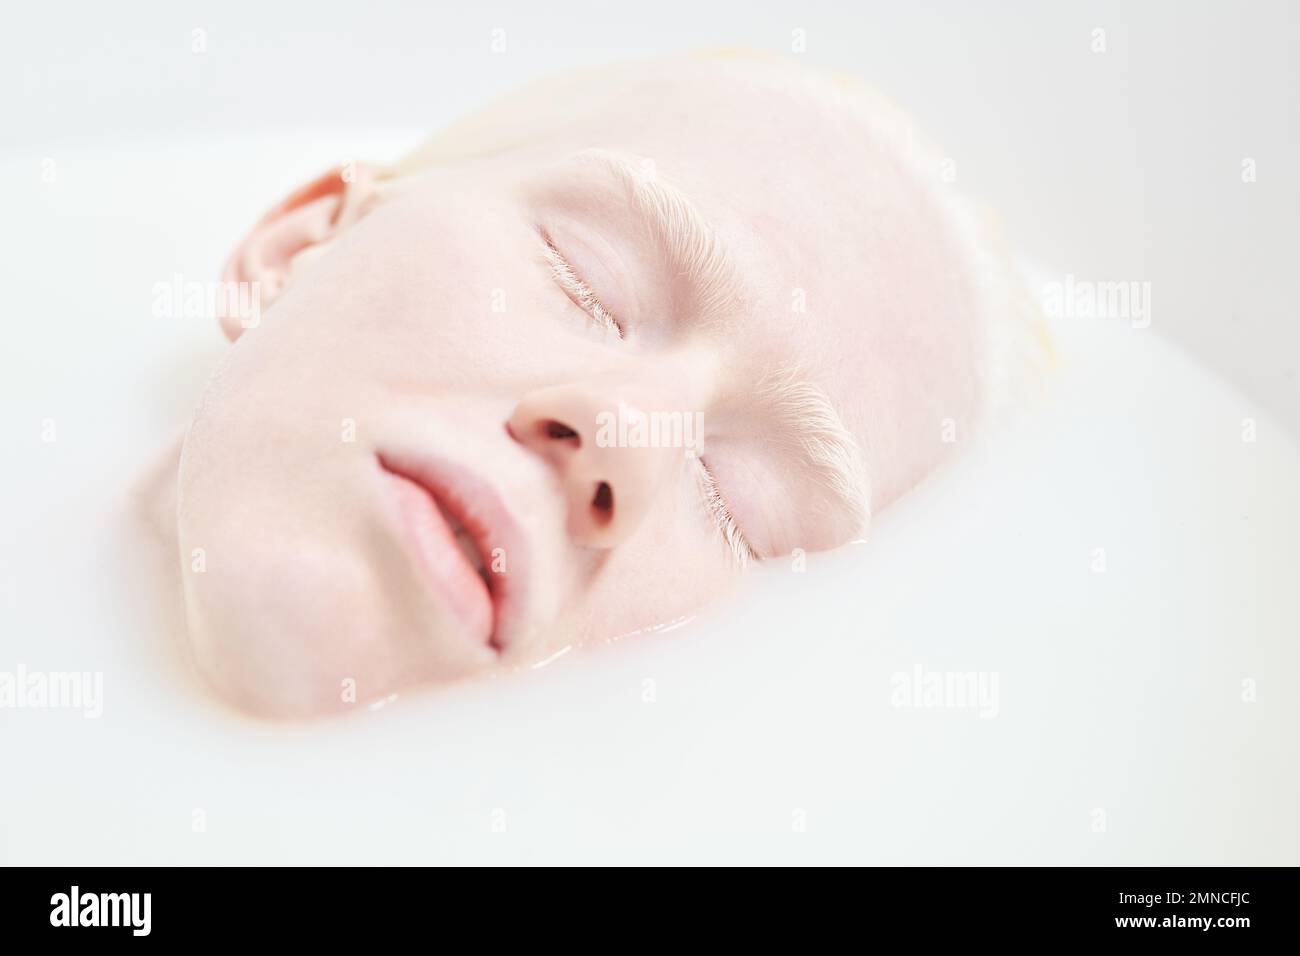 Primo piano di faccia pallida di giovane donna albina tranquilla o addormentata sdraiata nella vasca da bagno riempita con acqua calda e latte durante la procedura di bellezza Foto Stock